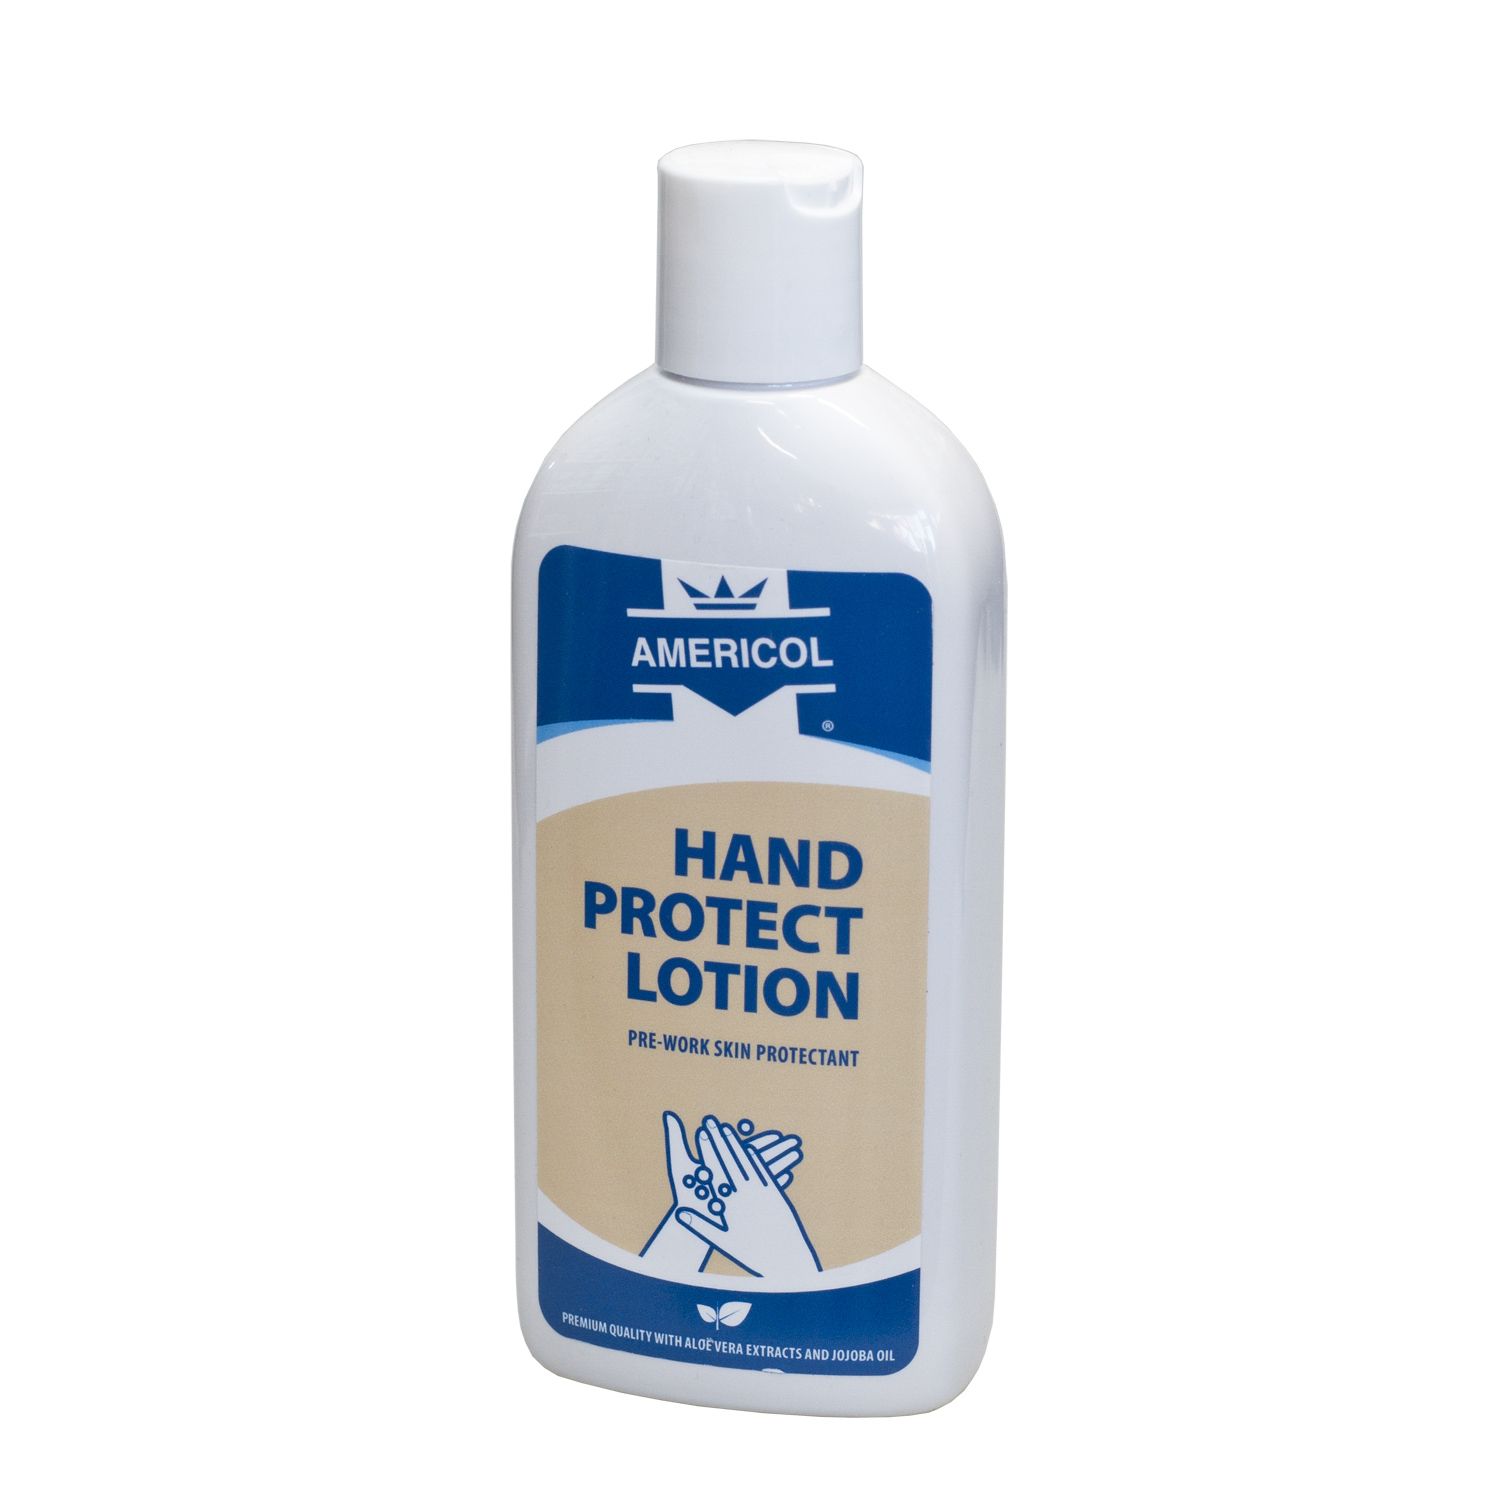 AMERICOL Hand Protect Lotion (250ml) - Ochranný krém na ruce, který brání hloubkovému ušpinění pokožky. Následné mytí je pak mnohem snadnější